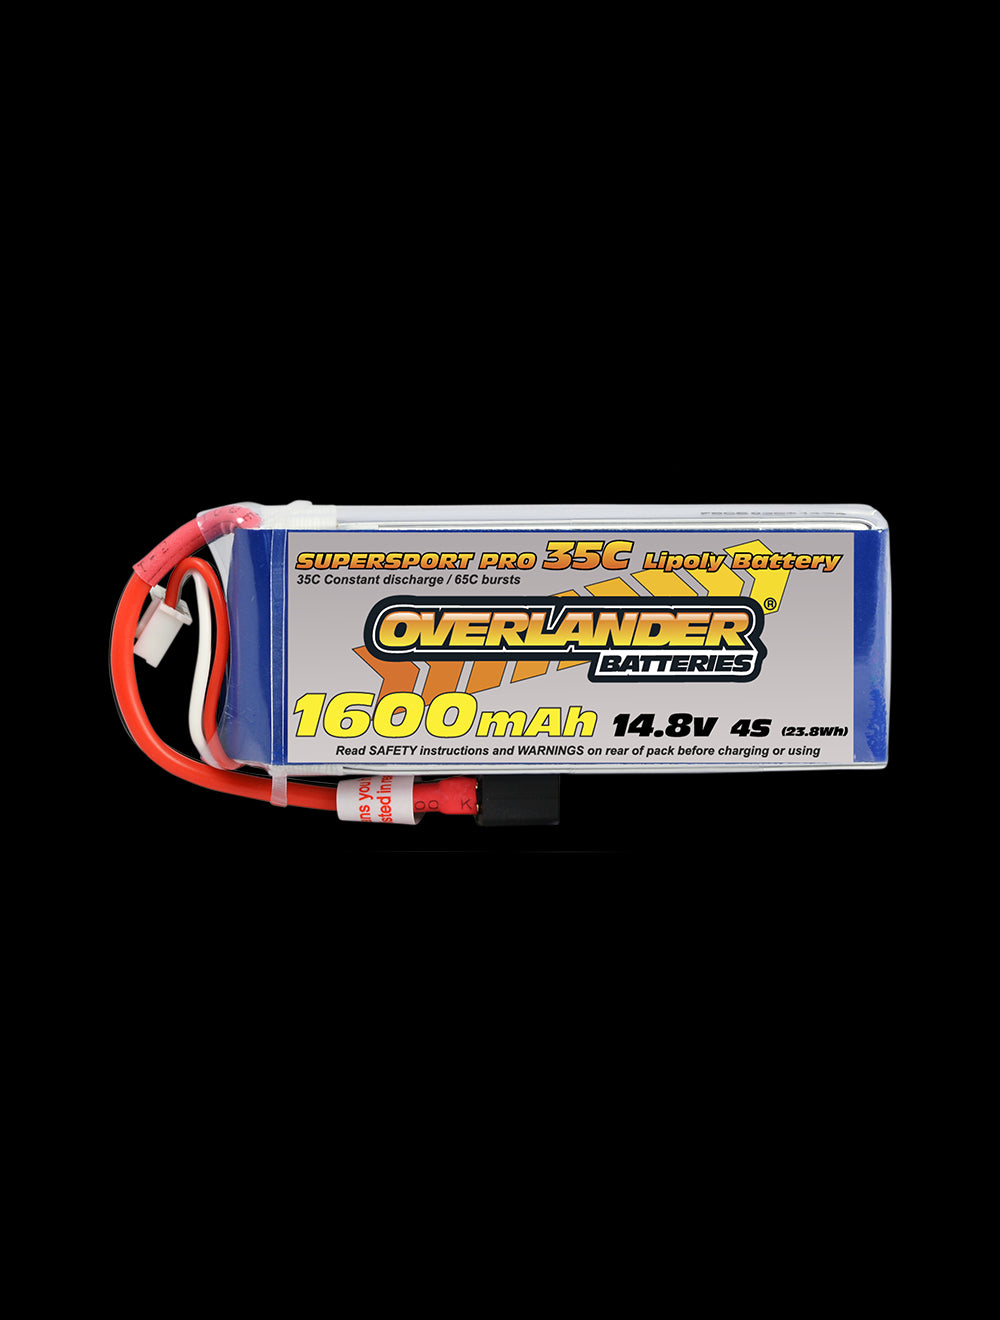 Overlander 1600mAh 14.8V 4S 35C Supersport Pro LiPo Battery - EC3 Connector 2972